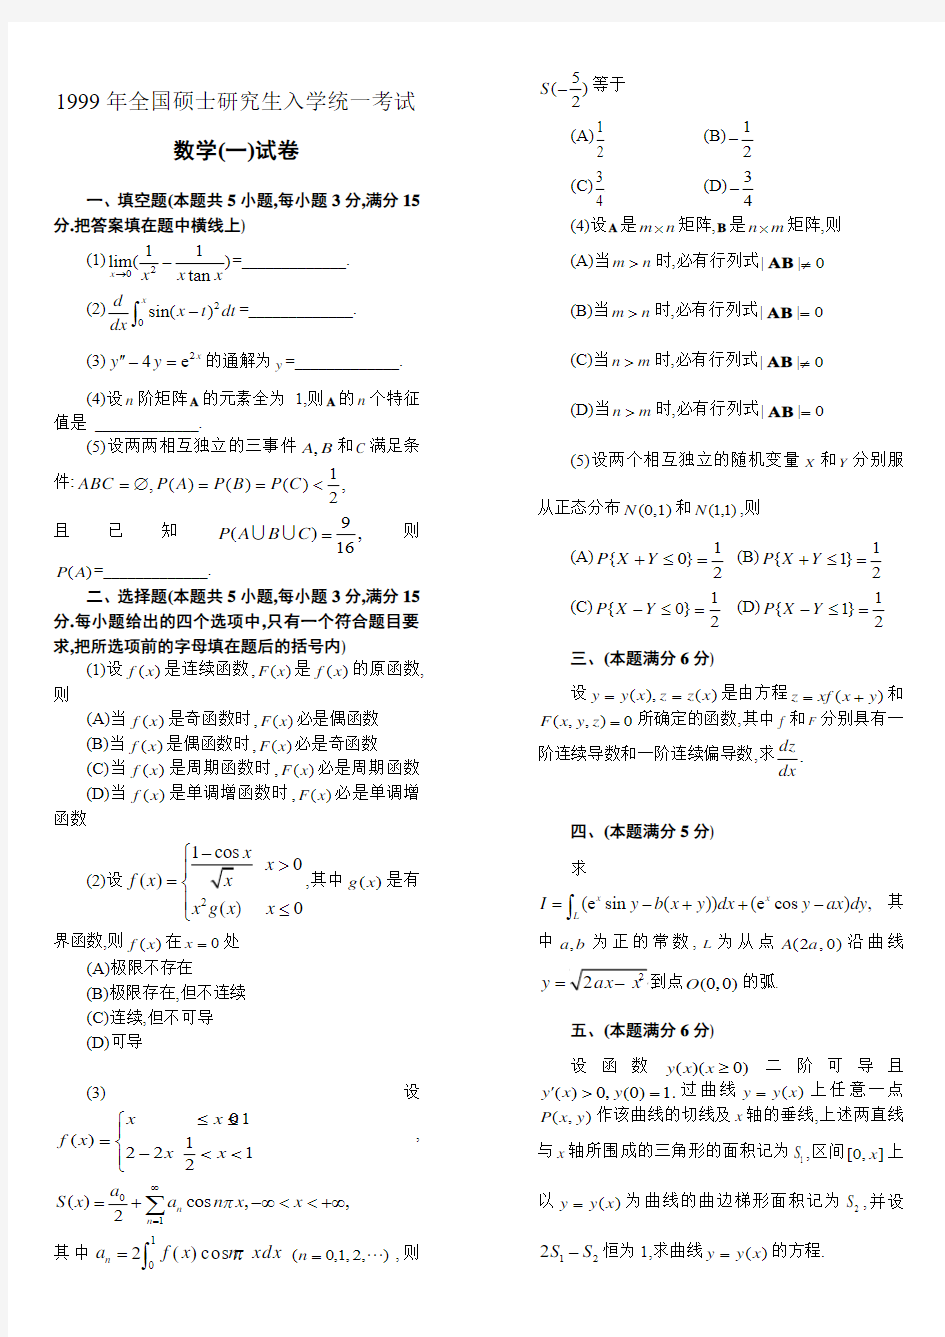 考研数学一历年真题(1999-2013)打印版